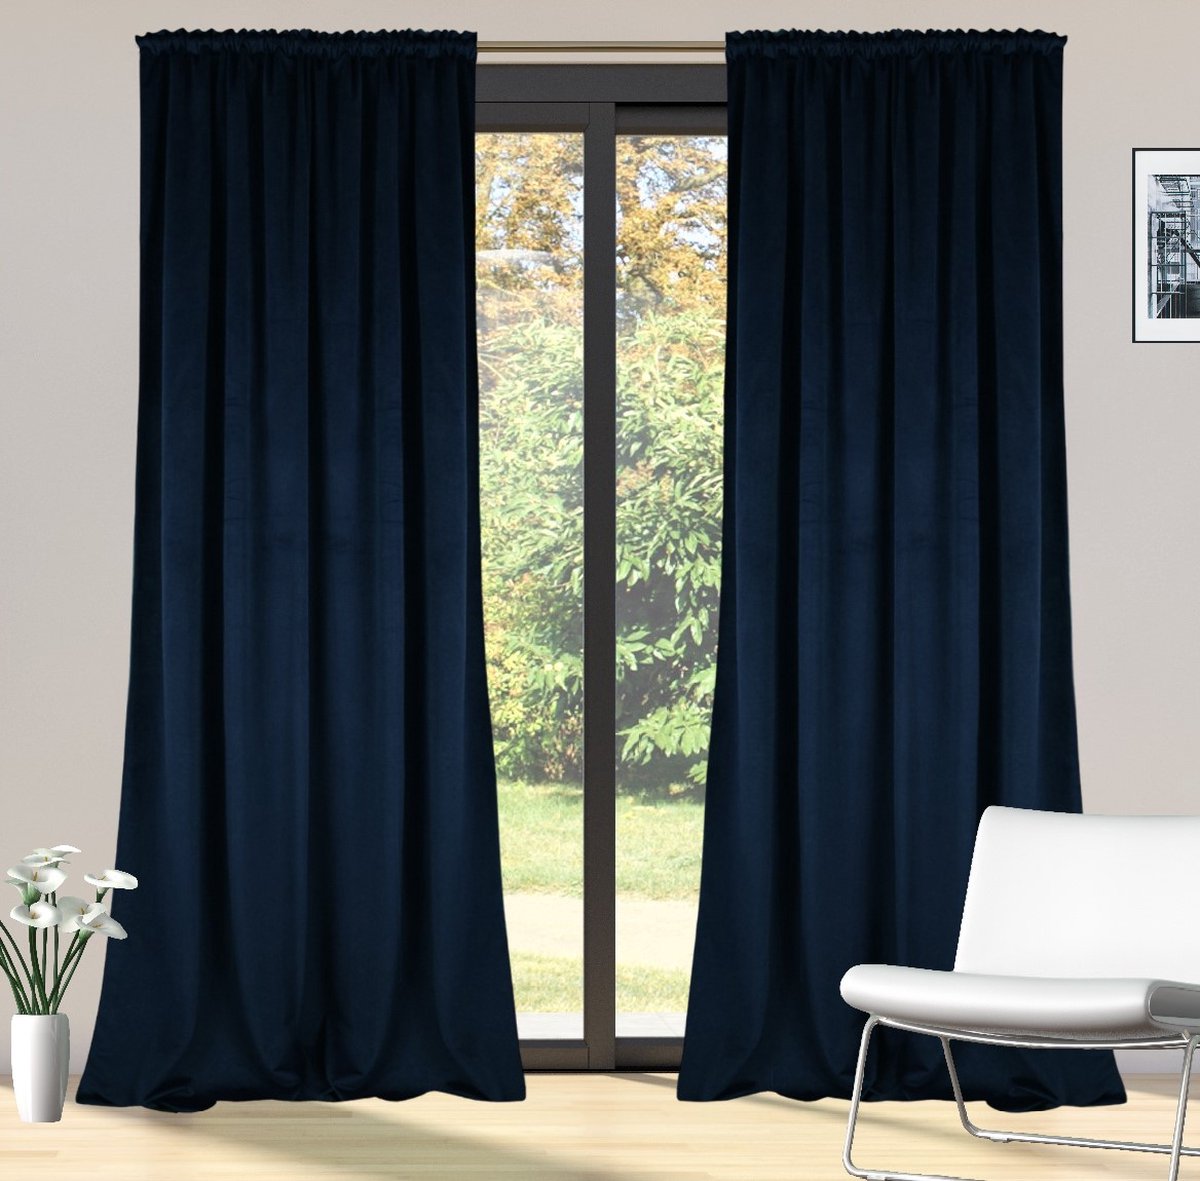 Glow Thuis - Kant en klaar 70% Verduisterend Gordijn - Hoge kwaliteit Fluweel – Blauw kleur Curtains - Gordijn met Plooiband ( Inclusief haken )- 140x250 cm - 1 Stuk